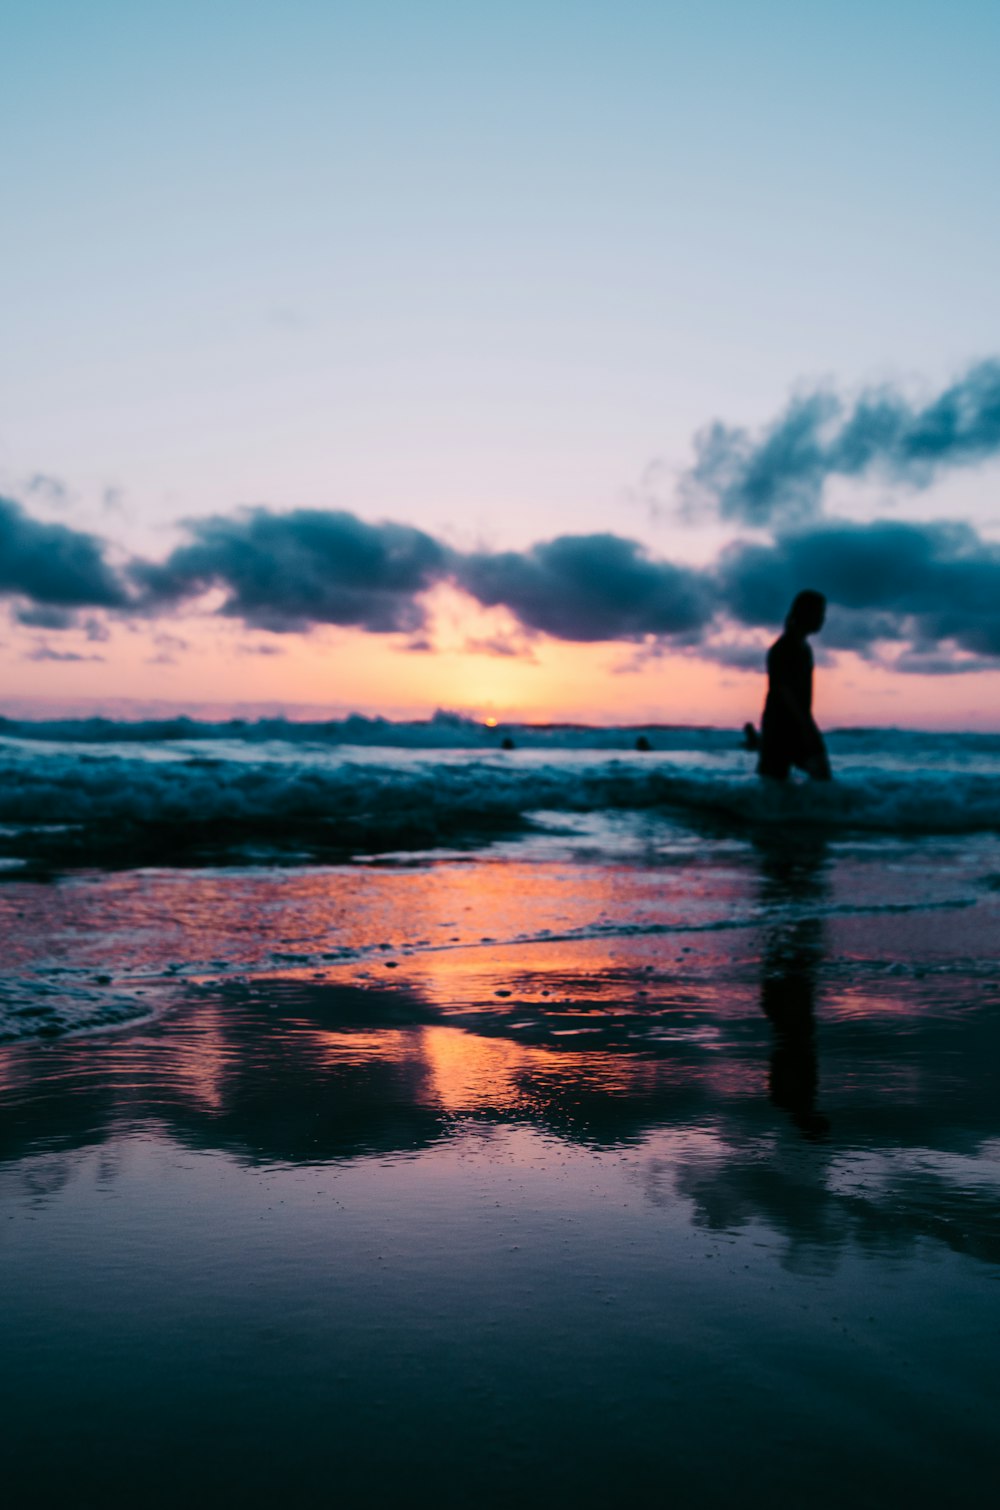 골든 아워 동안 흐린 하늘 아래 해변을 걷는 사람의 실루엣 사진